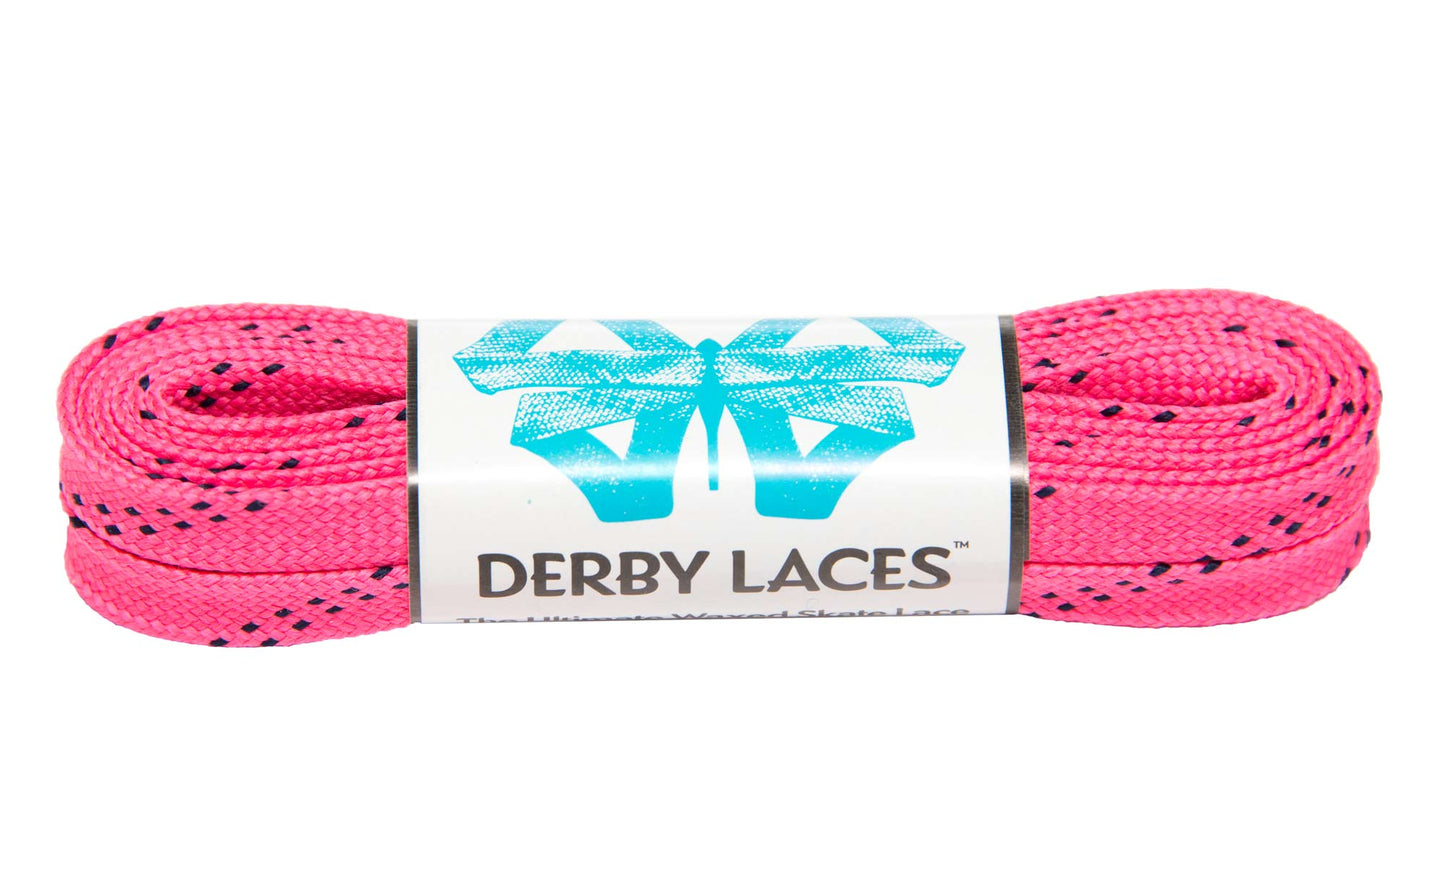 Lacci Derby Laces - 72" / 183cm - Hot pink